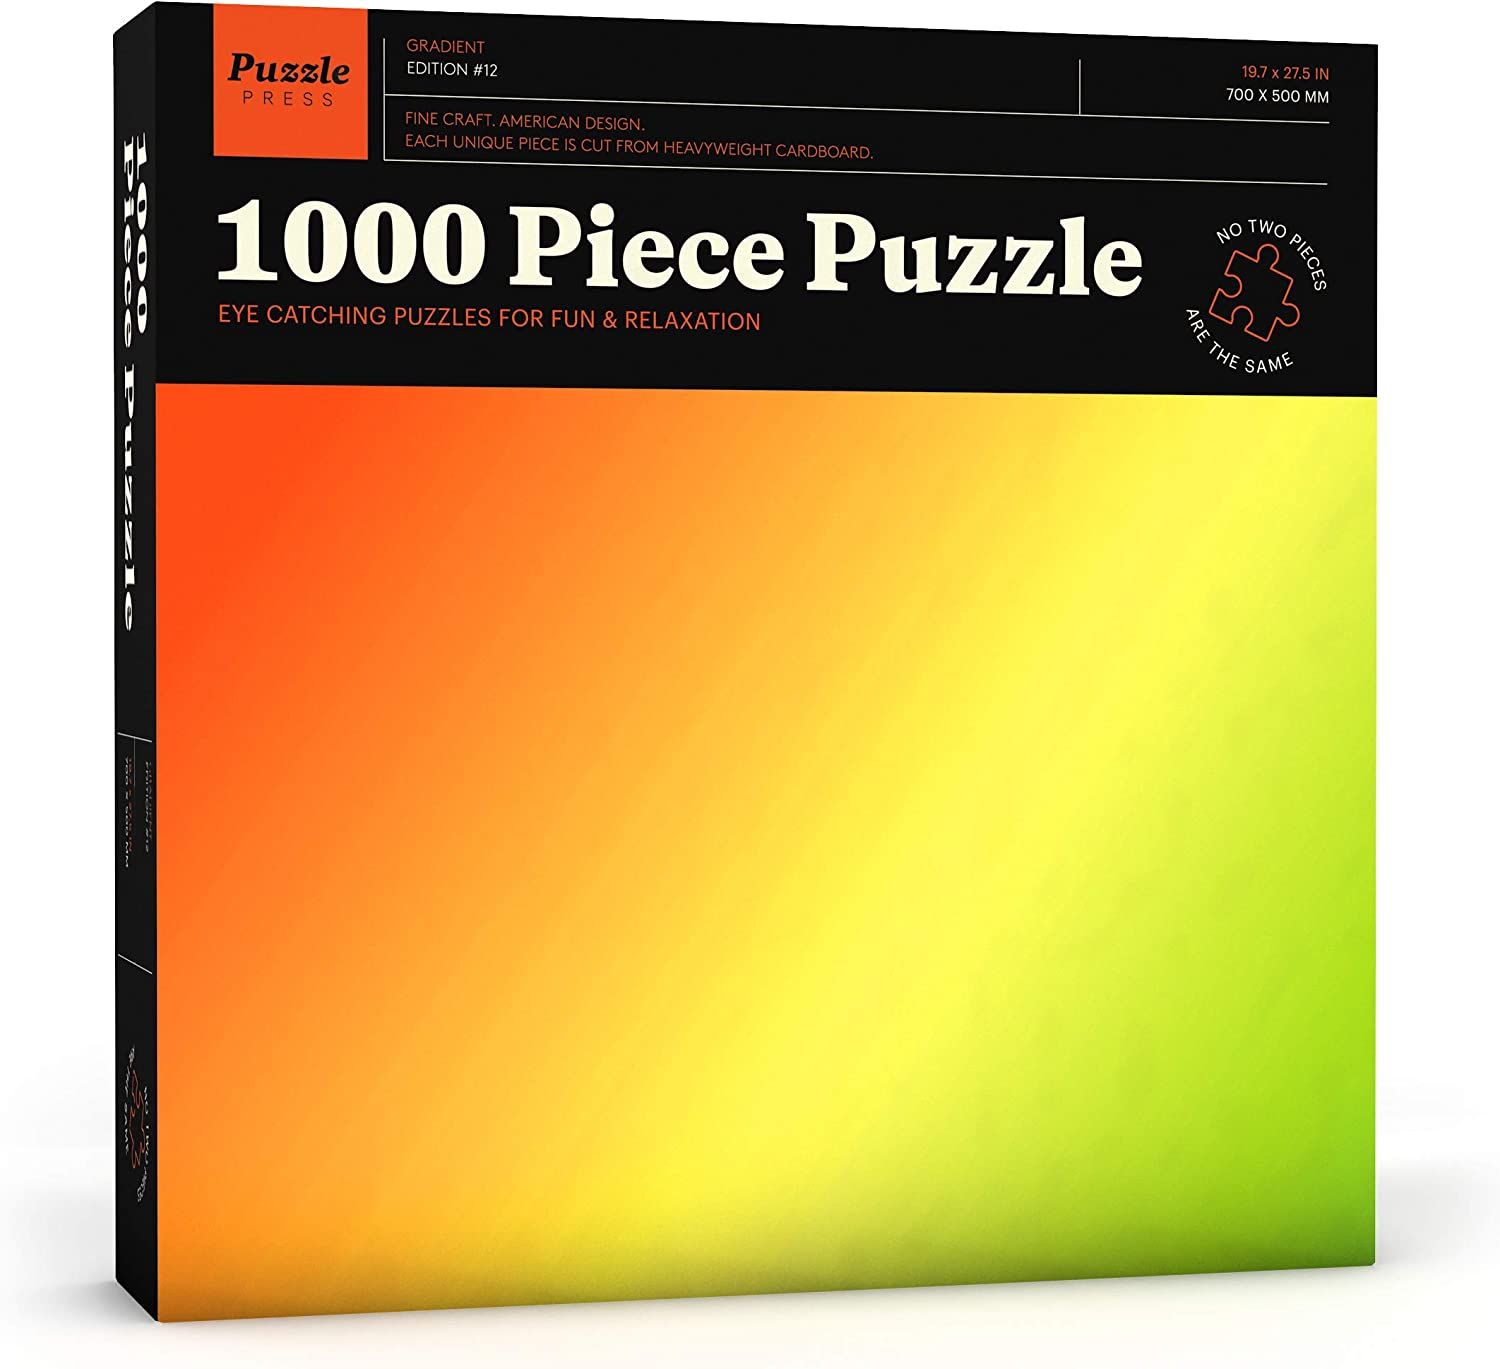 Puzzle Press Gradient Puzzle 1000 Piece Adult Jigsaw Puzzle 1